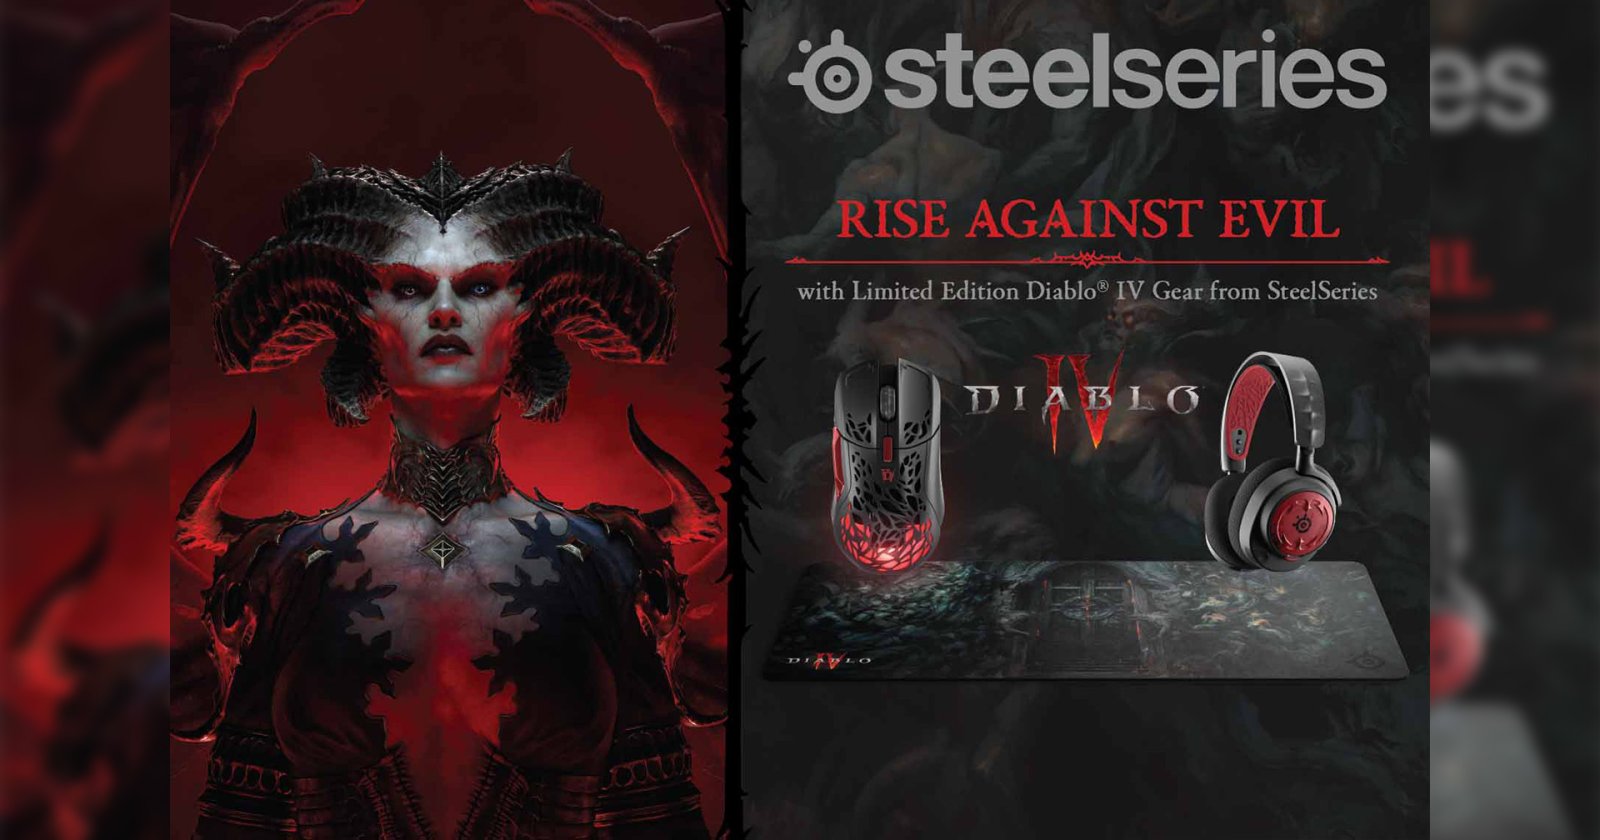 อาร์ทีบีฯ เปิดตัว SteelSeries คอลเลกชั่นใหม่ล่าสุด Diablo IV Limited Edition และไมโครโฟน Alias พร้อมจัดหนักจัดเต็มด้วยโปรโมชั่นในงาน TGS 2023